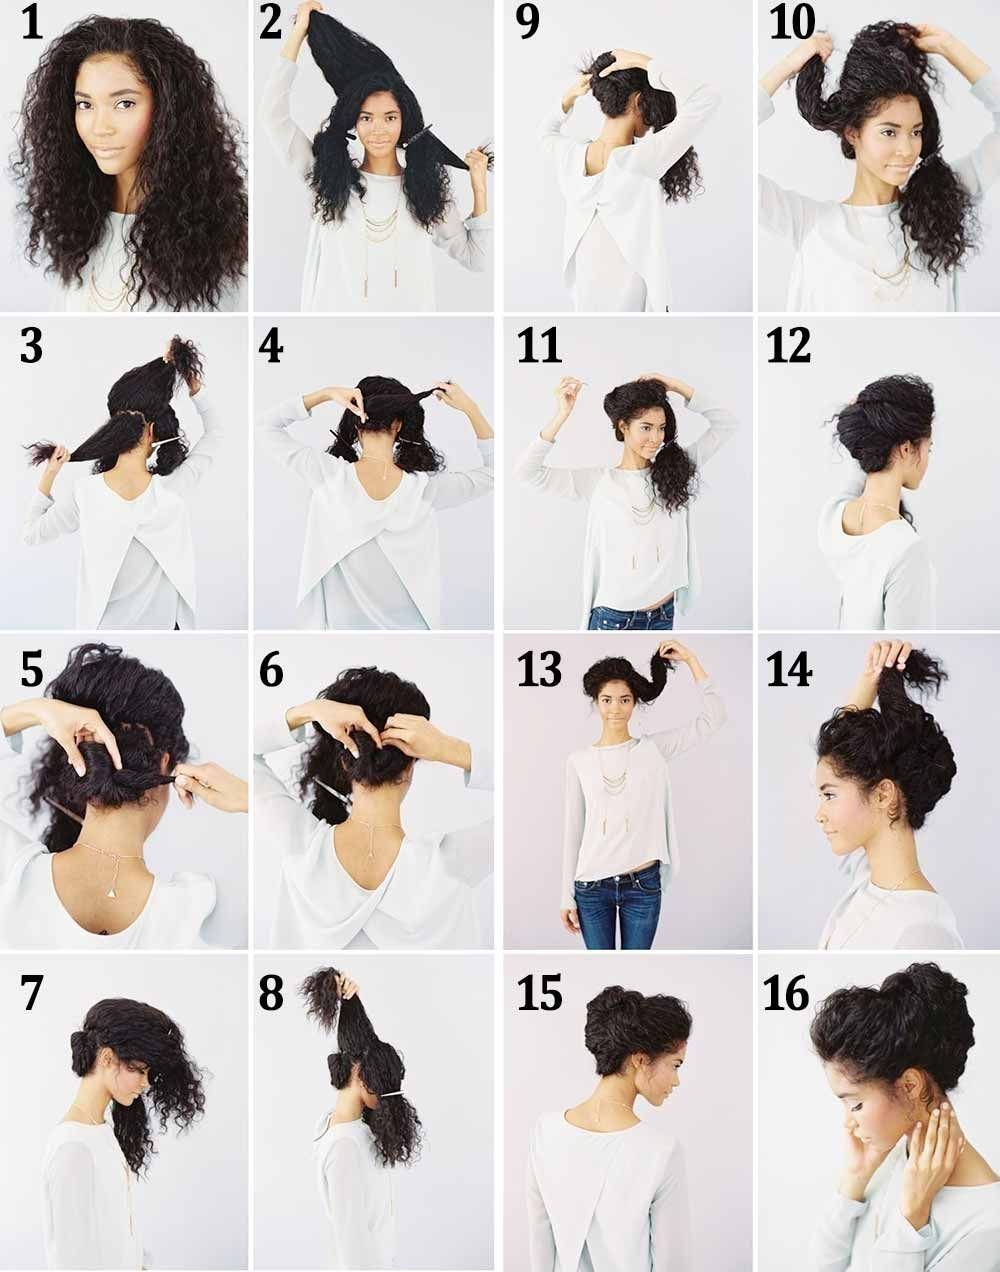 Укладка локонов: способы для волос разной длины